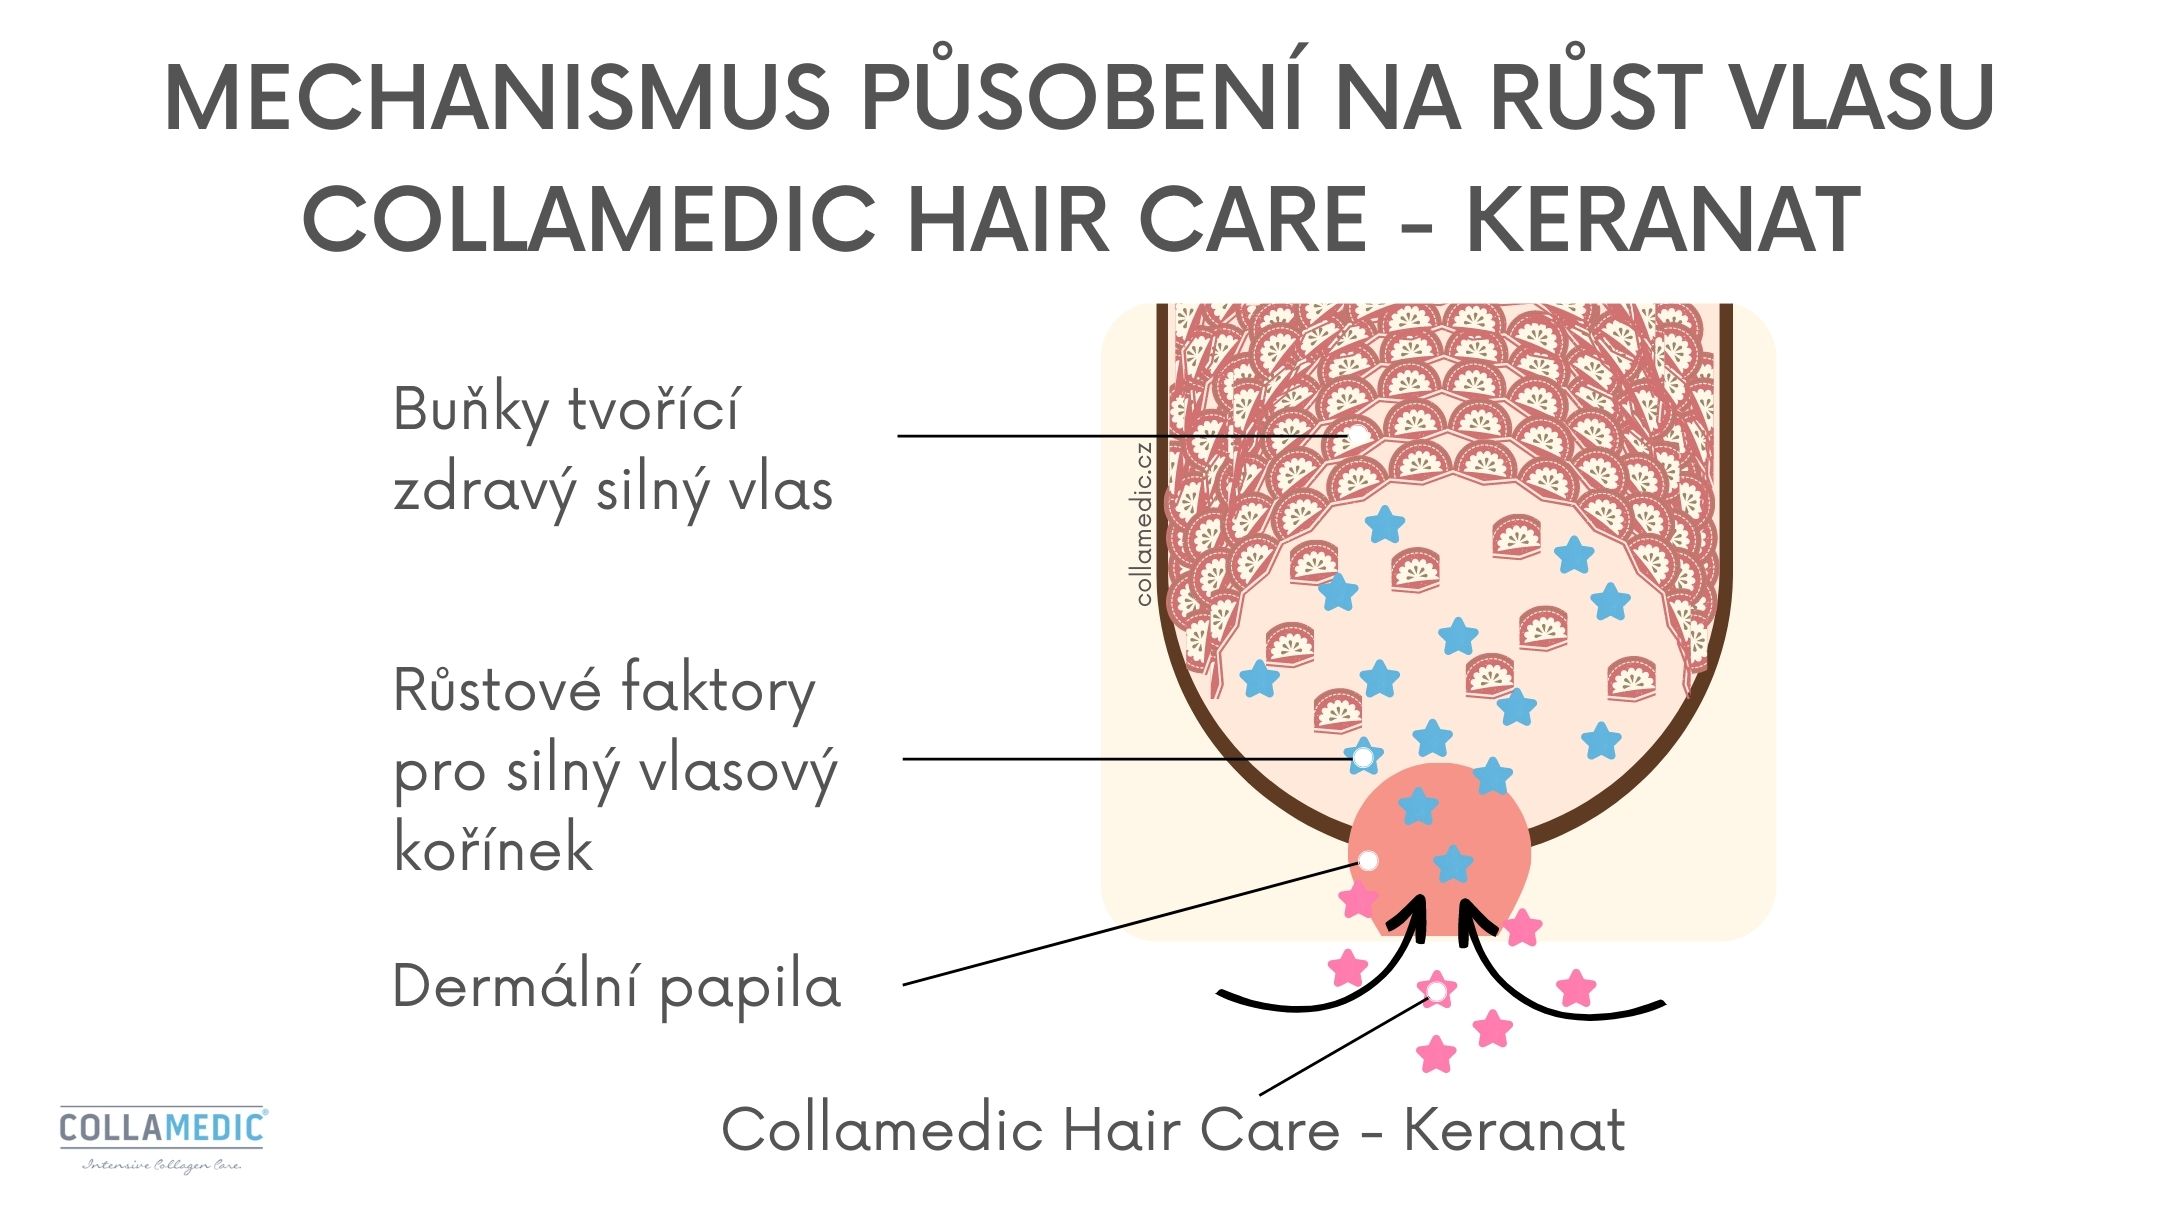 Collamedic Hair Care Keranat - vitaminy na vlasy - mechanismus působení na růst vlasů